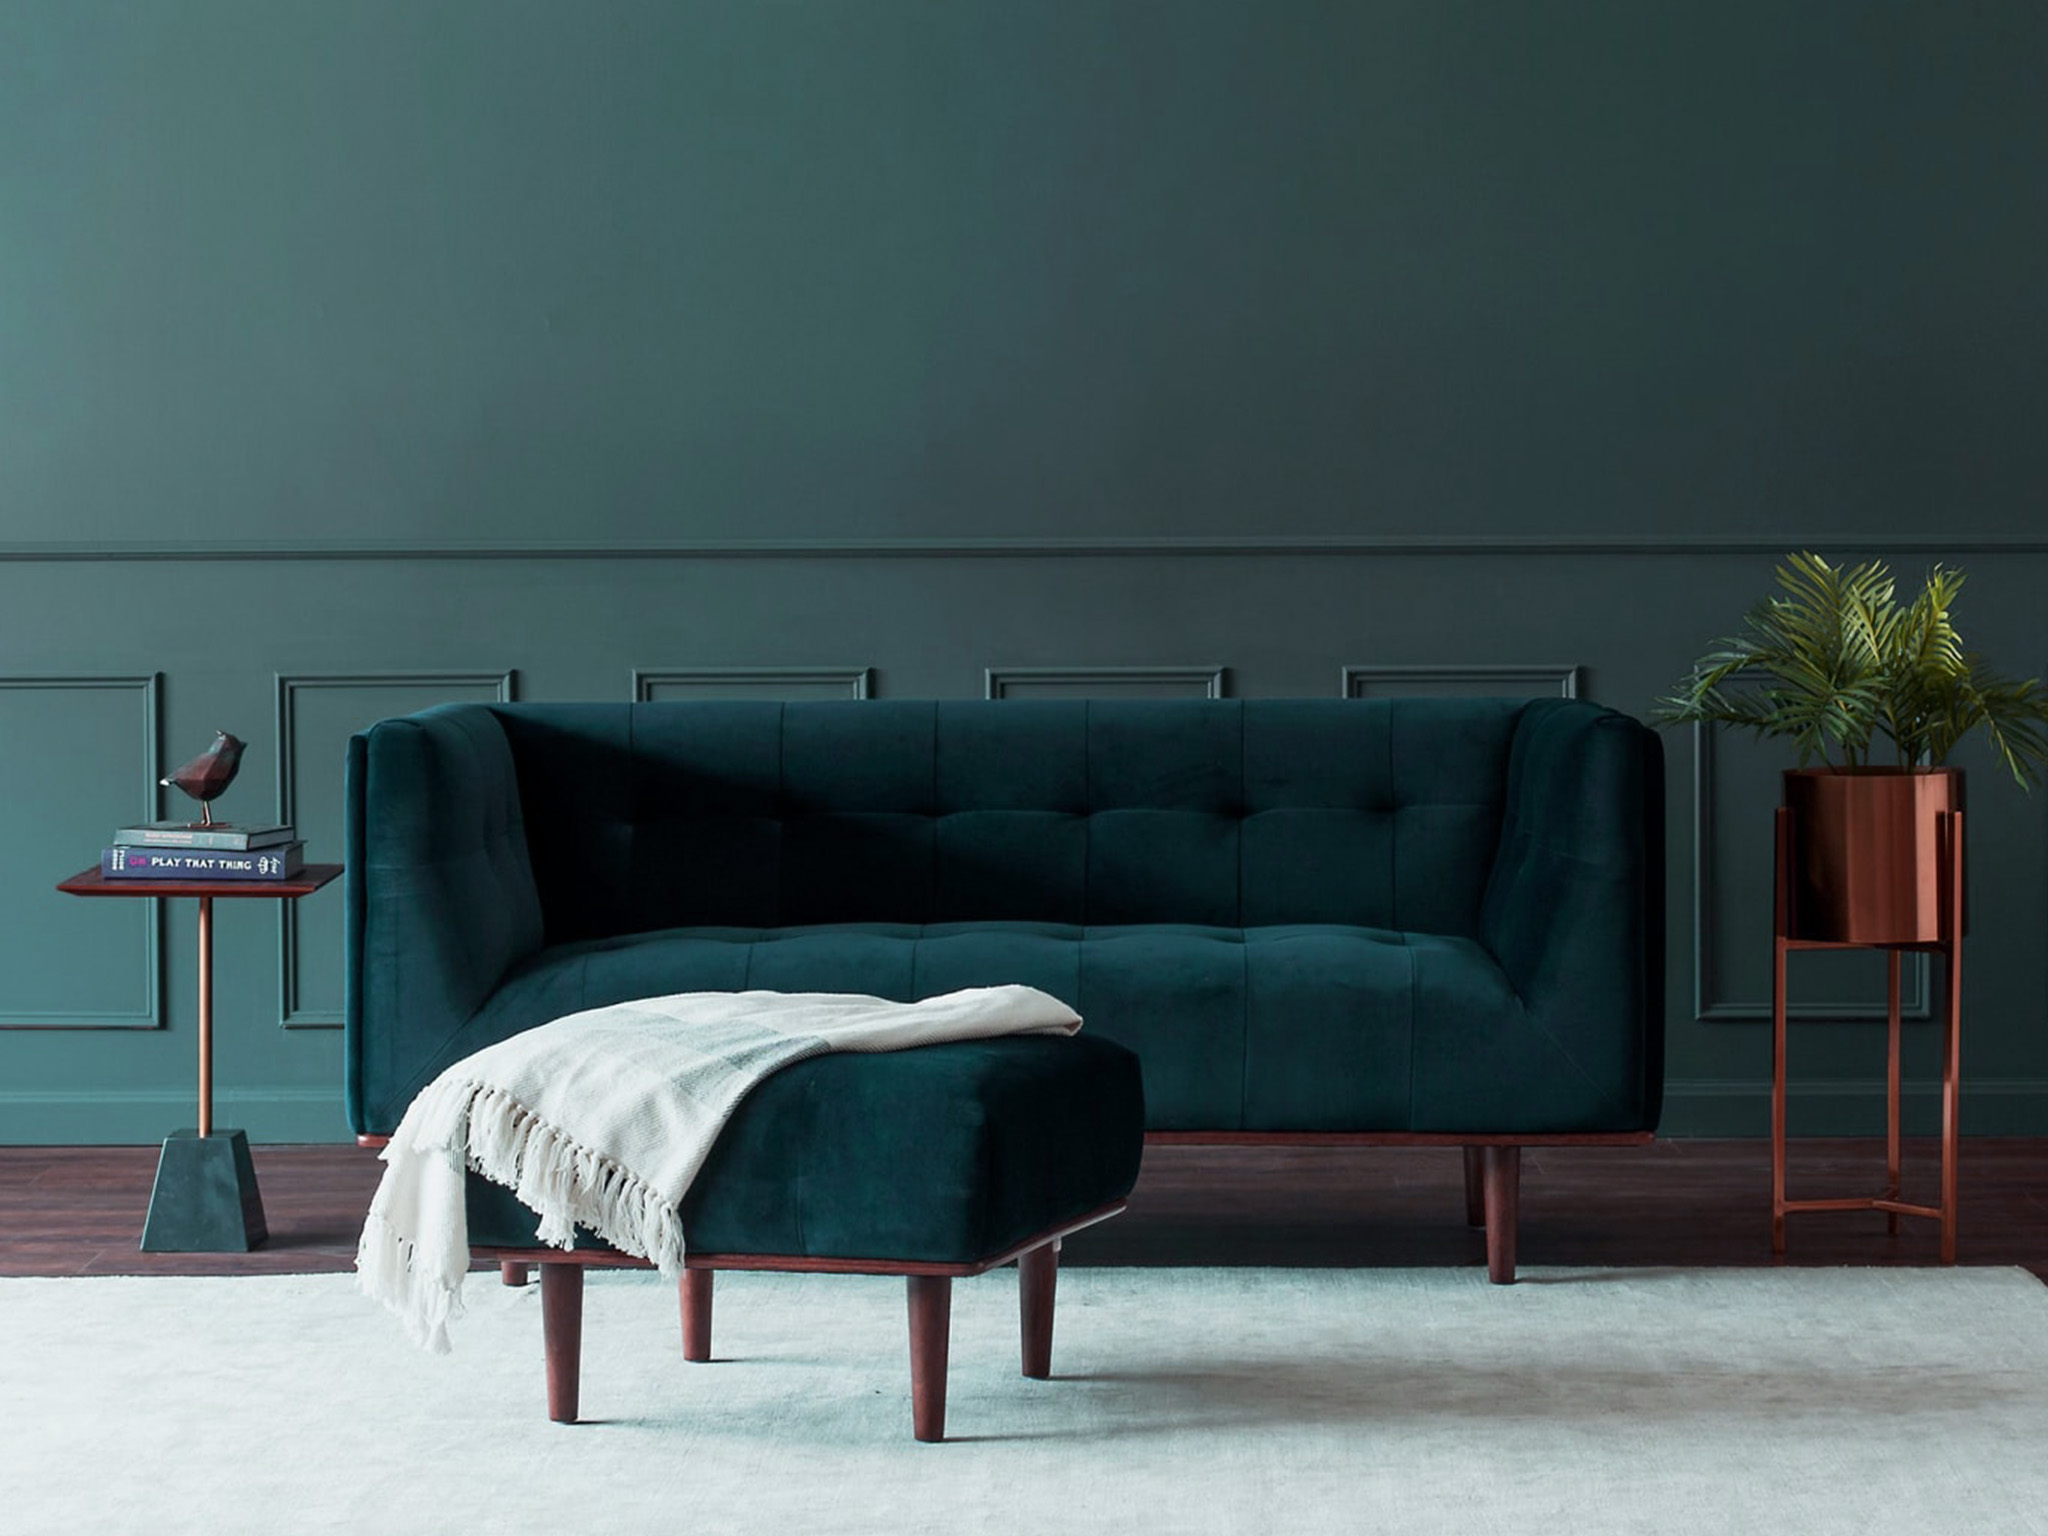 【沙发】天鹅绒面料沙发双人沙发客厅沙发可随意组合多种组合方式